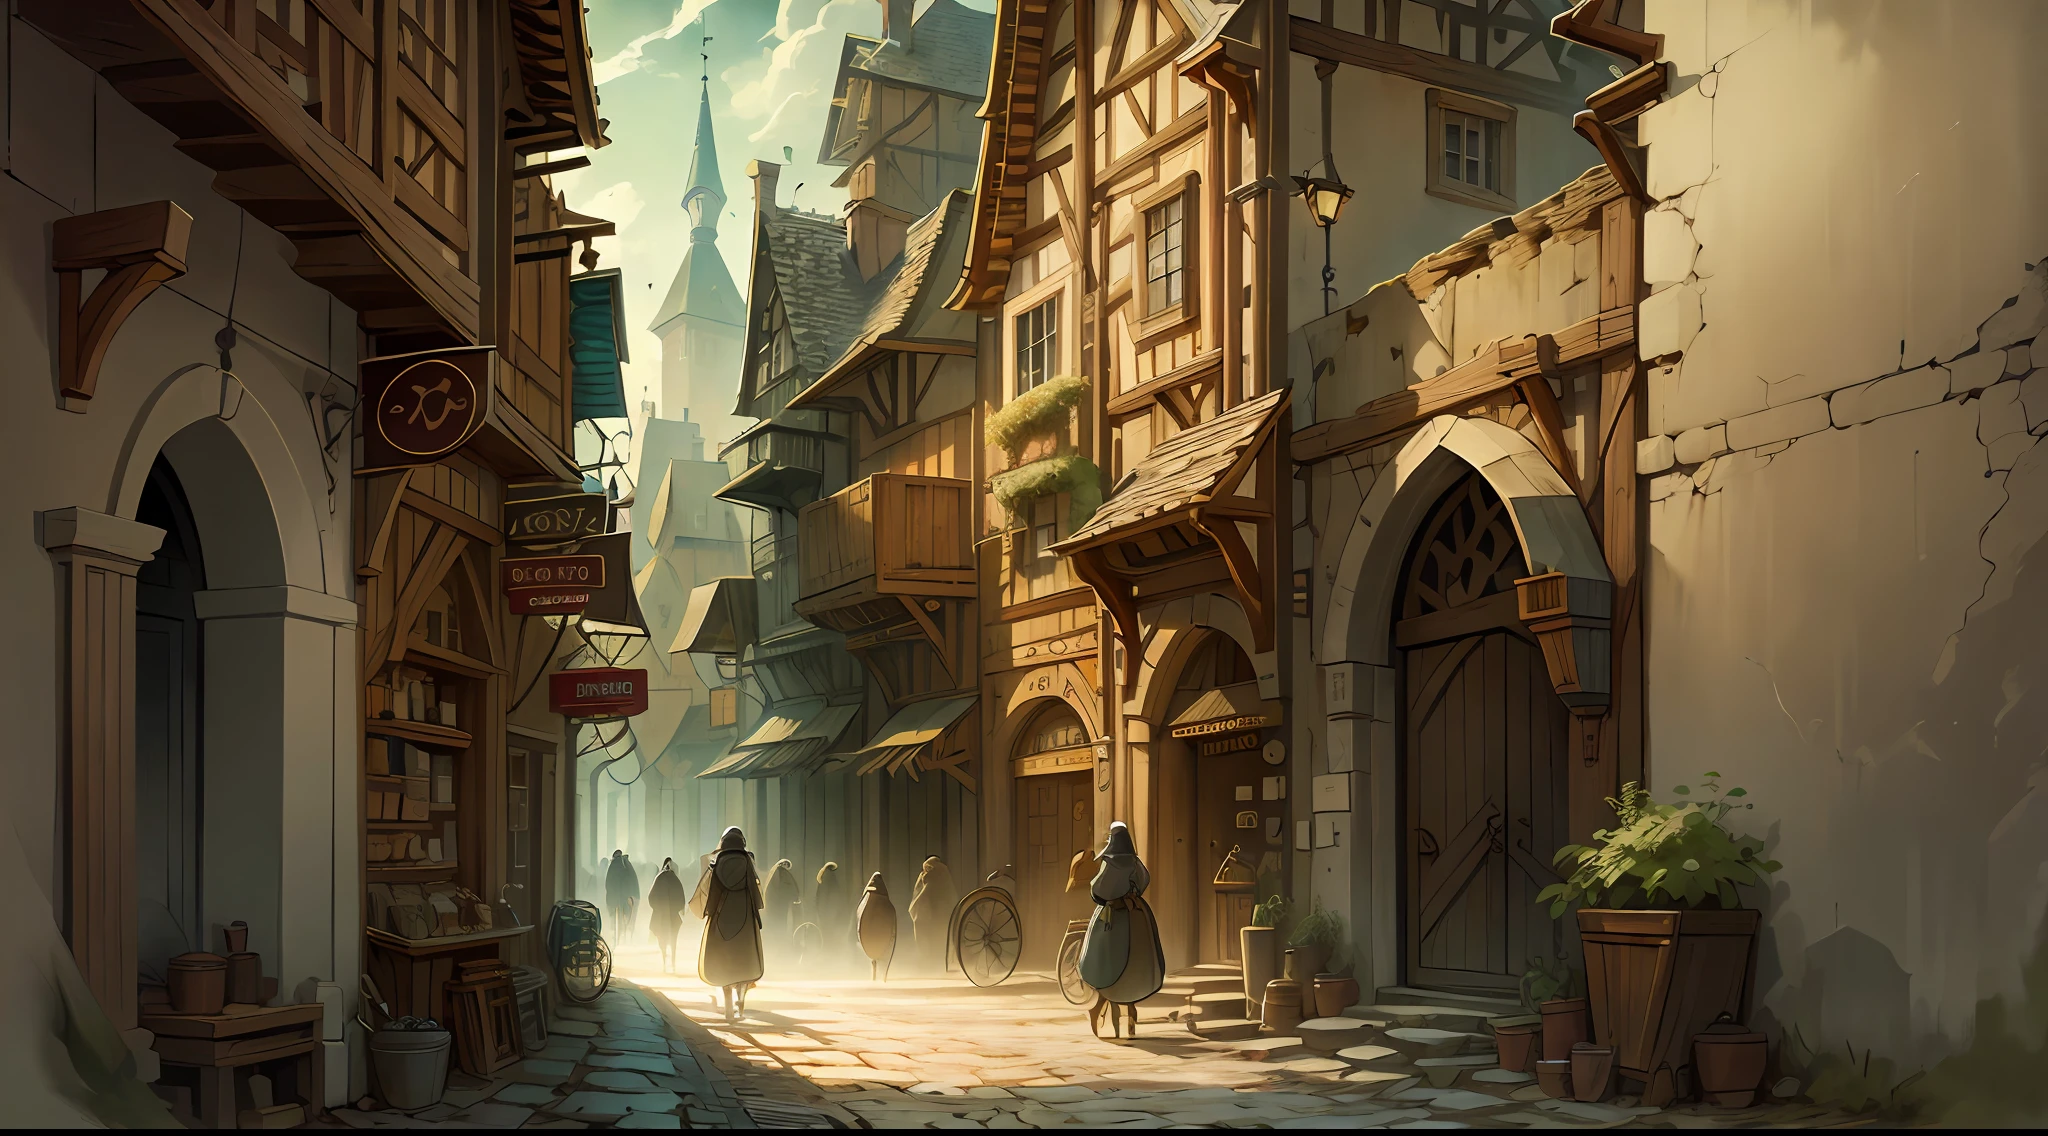 Bela ilustração de uma rua medieval da cidade, povo medieval andando pelas ruas, detalhado, Intrincado.